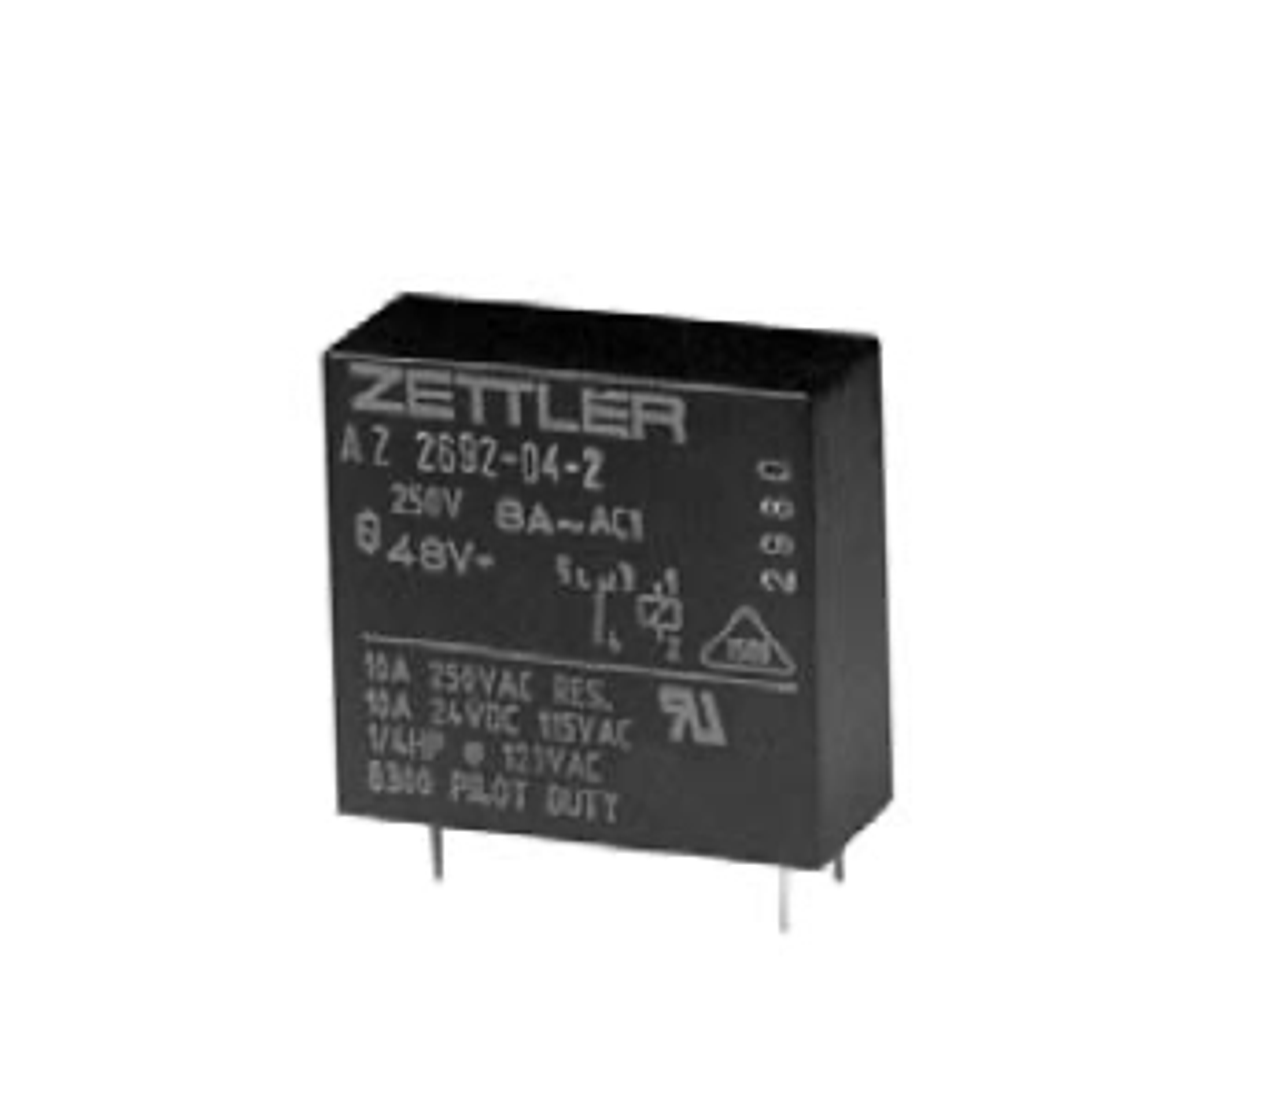 American Zettler AZ2692-04-2 Power Relay